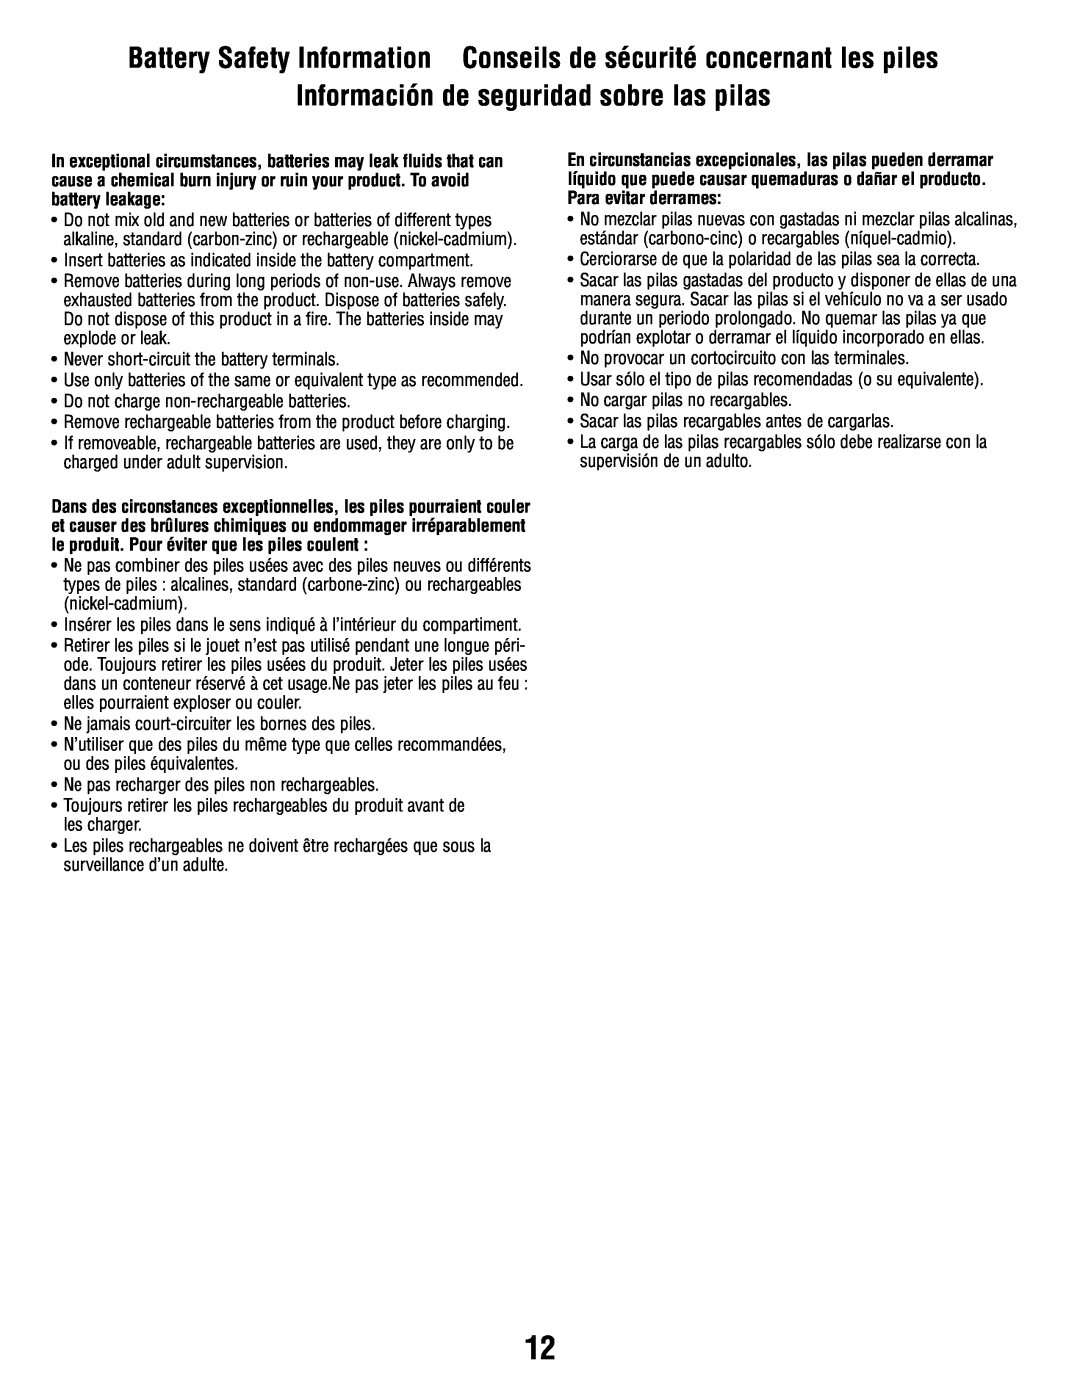 Fisher-Price P3334 manual Battery Safety Information Conseils de sécurité concernant les piles 